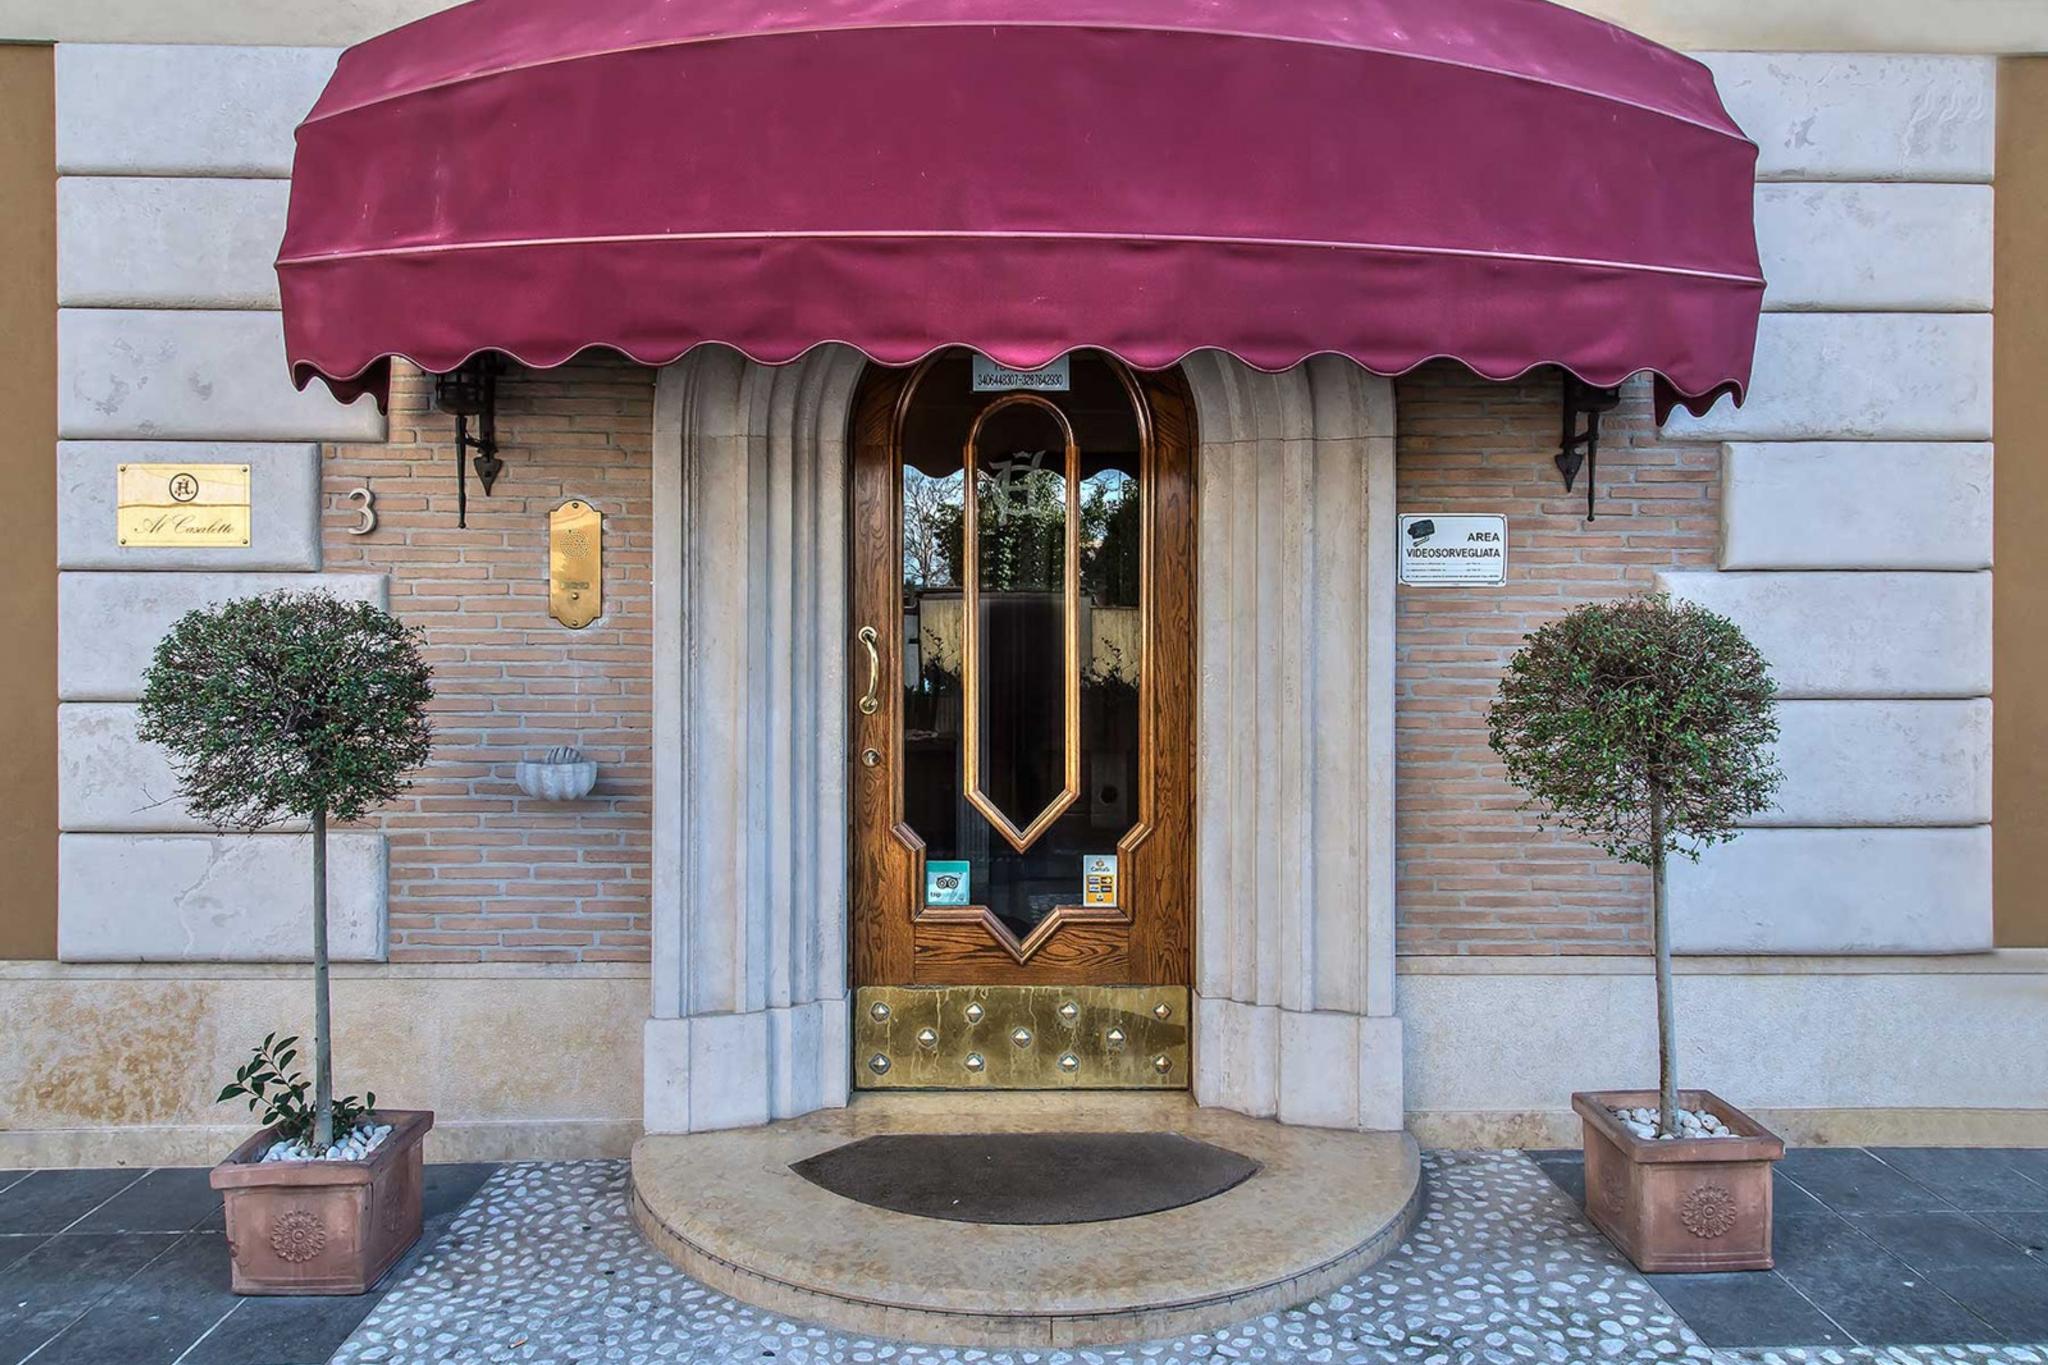 https://booking.hotelincloud.com/show/667921 | Rome | Benvenuti all'Hotel Al Casaletto